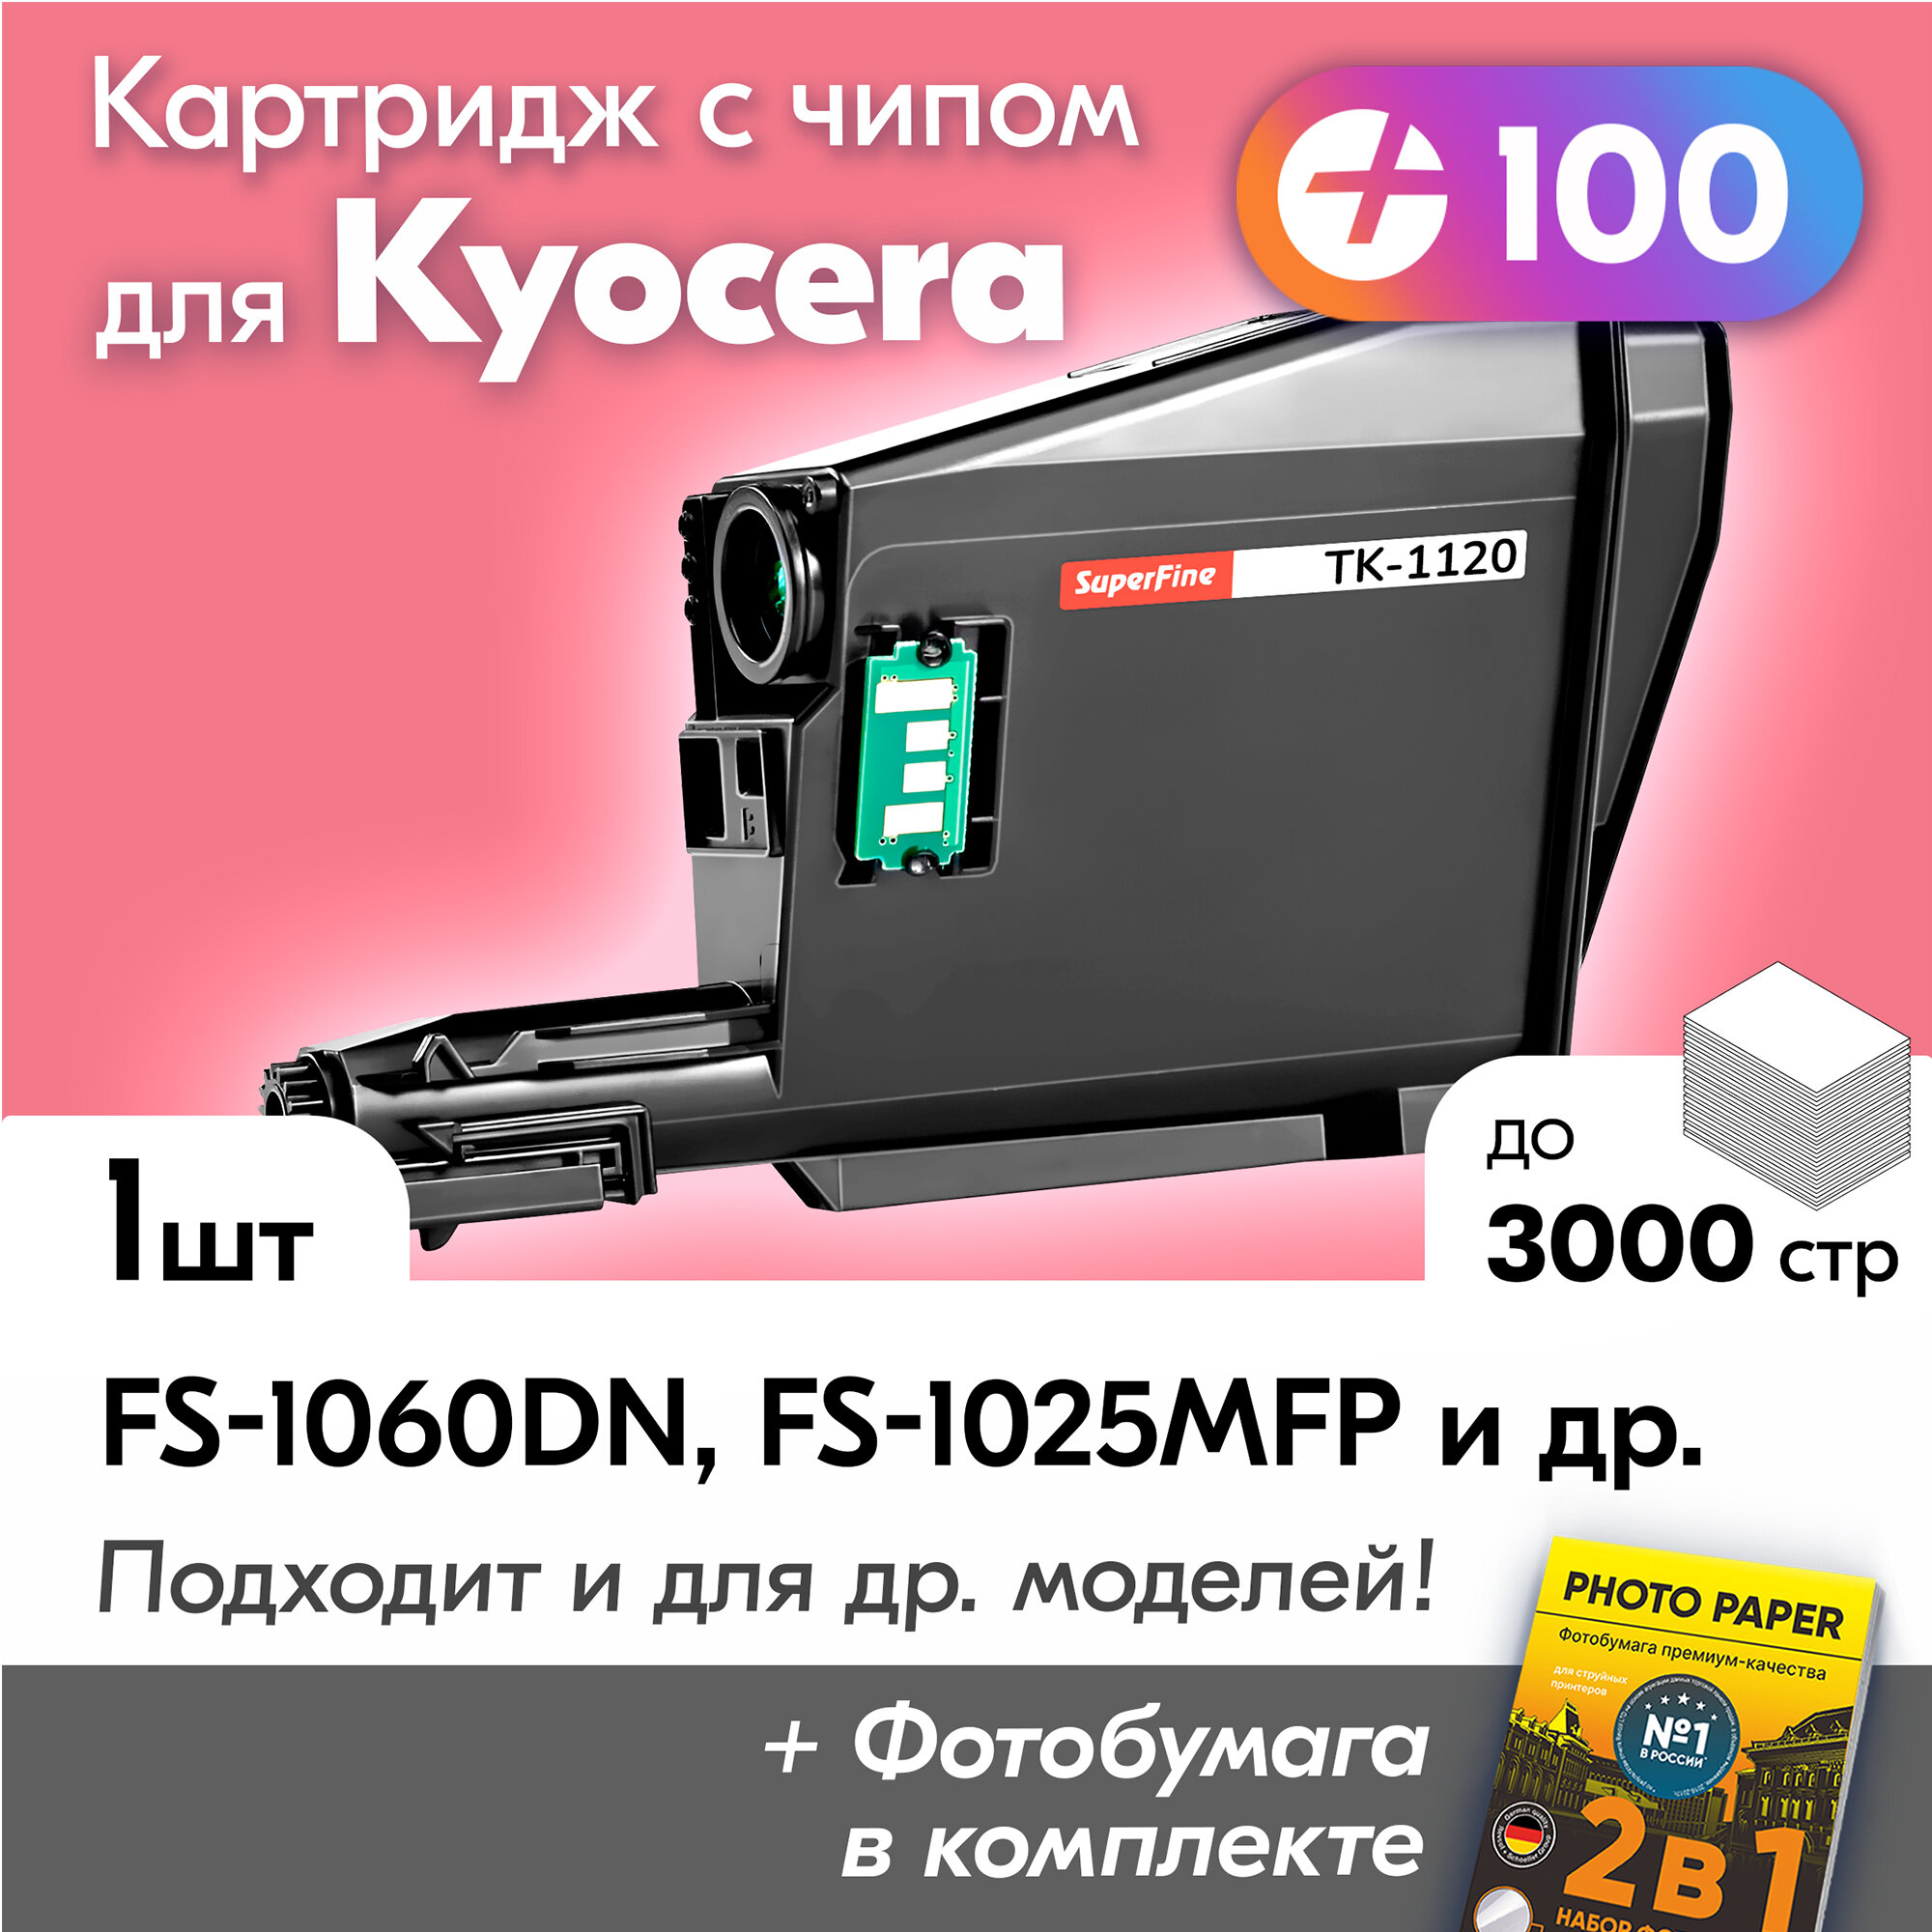 Картридж для Kyocera FS-1060DN, FS-1025MFP, FS-1125MFP, TK-1120 и др. с краской (тонером) черный, новый, заправляемый, 3000 копий